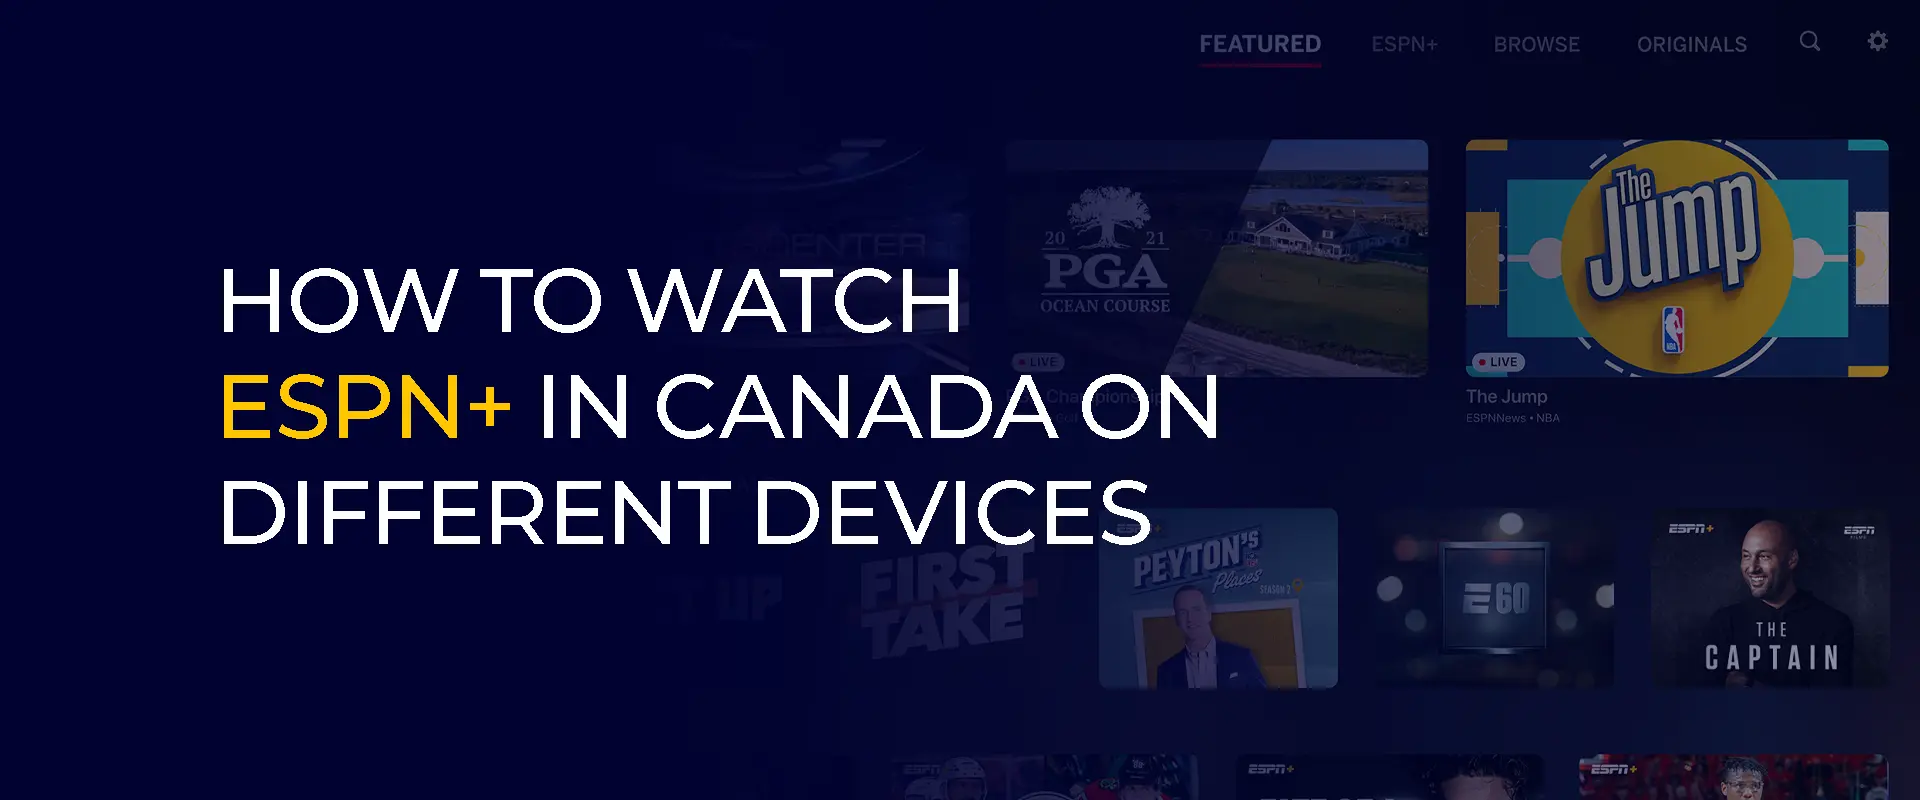 ESPN+ in Canada bekijken op verschillende apparaten